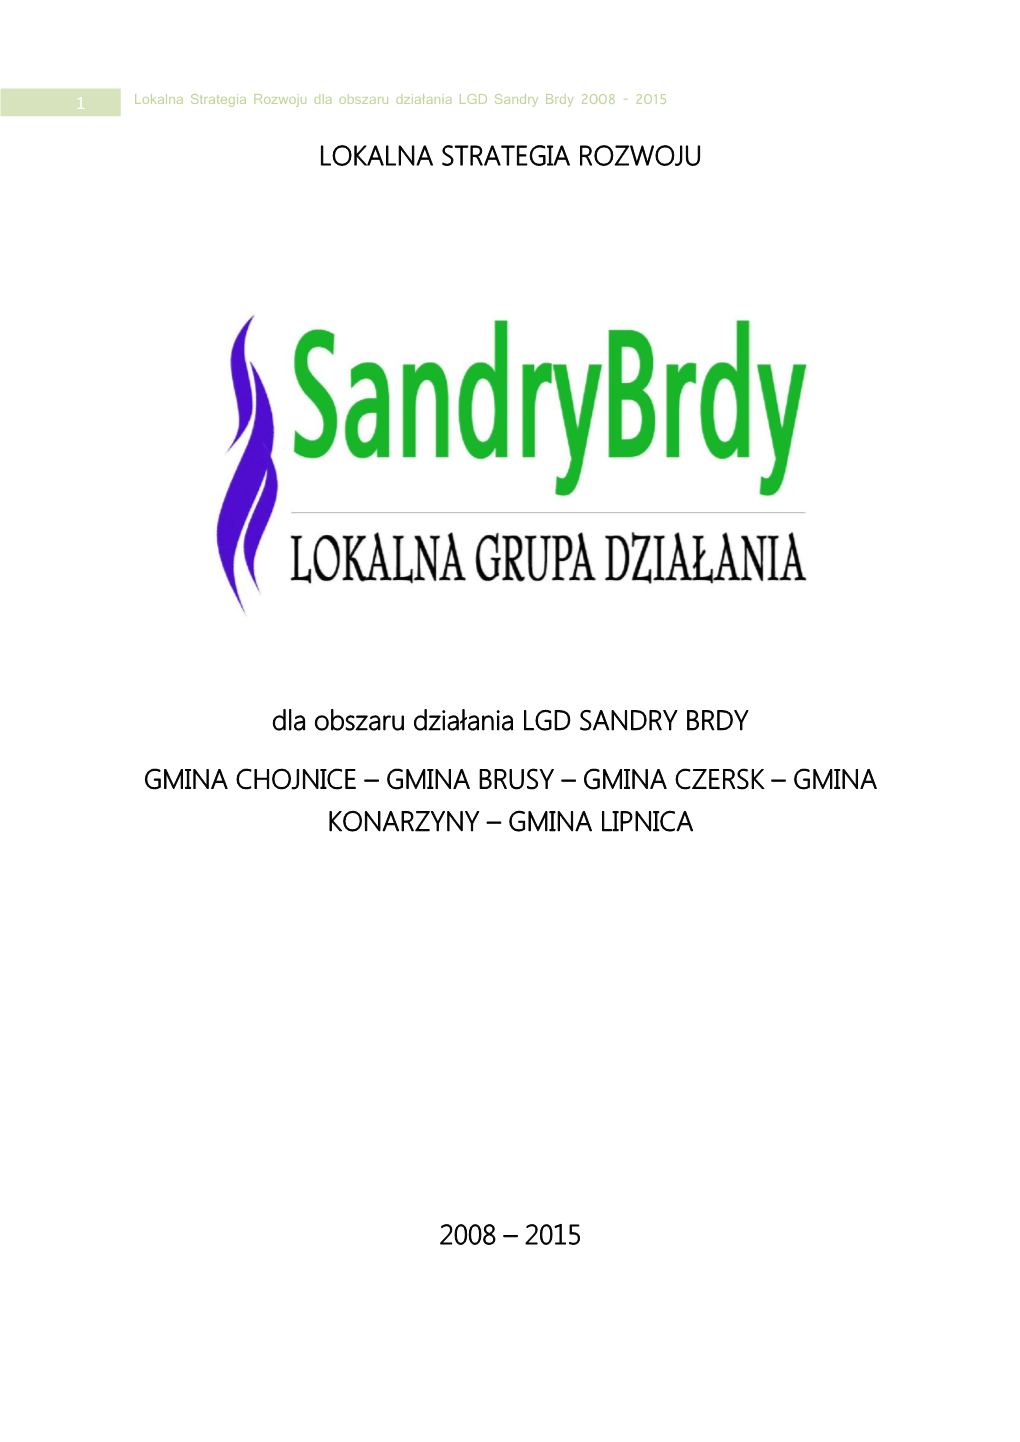 Lokalna Strategia Rozwoju Dla Obszaru Działania LGD Sandry Brdy 2008 - 2015